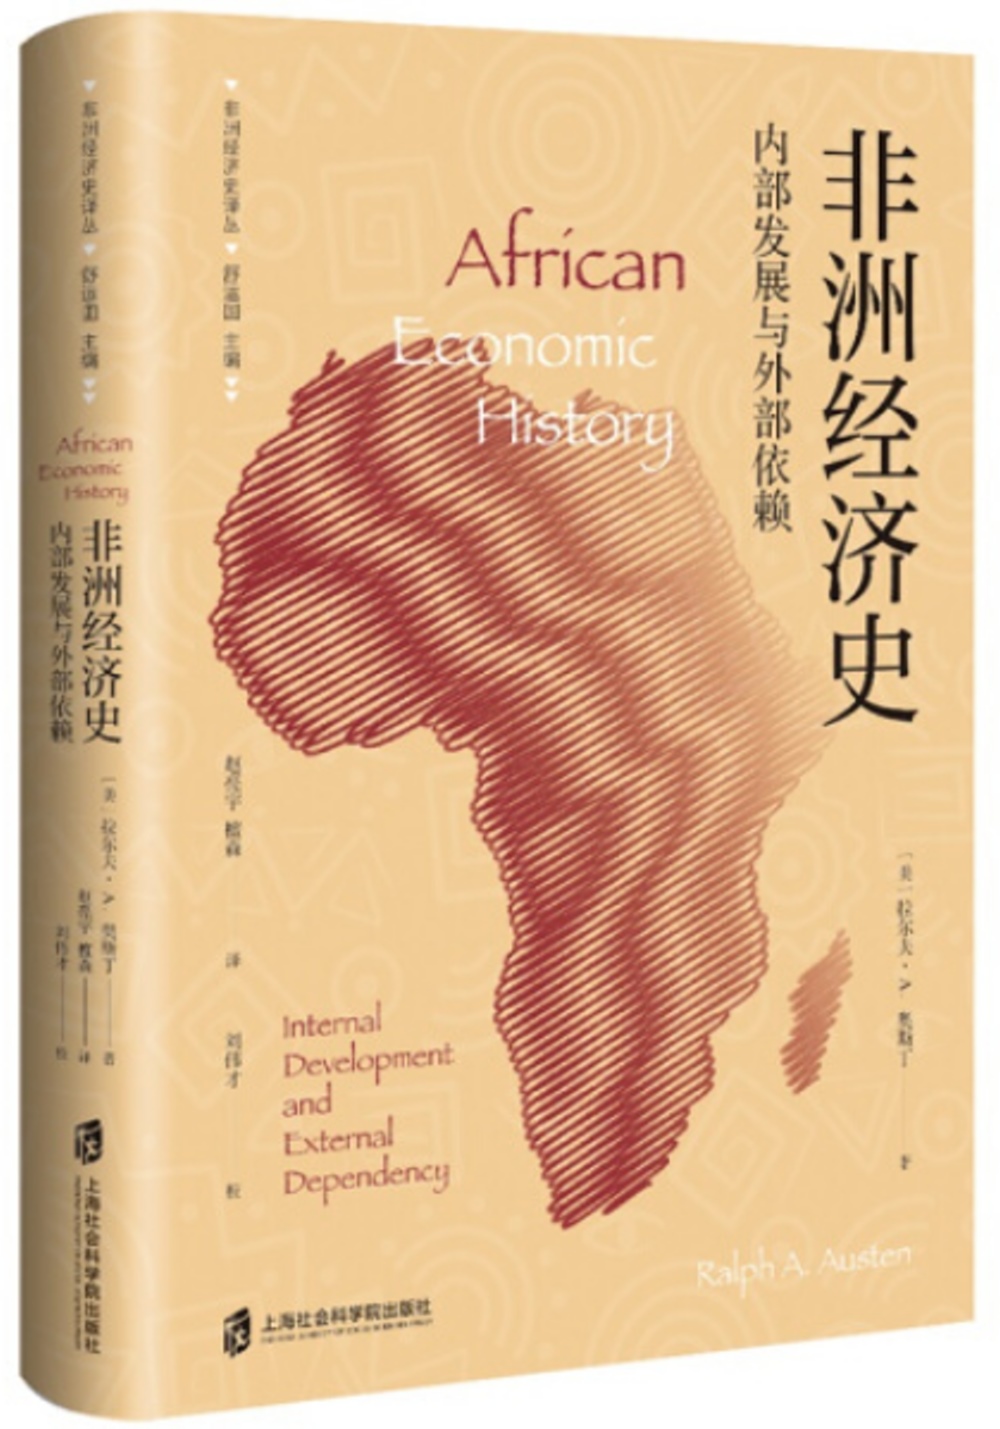 非洲經濟史：內部發展與外部依賴